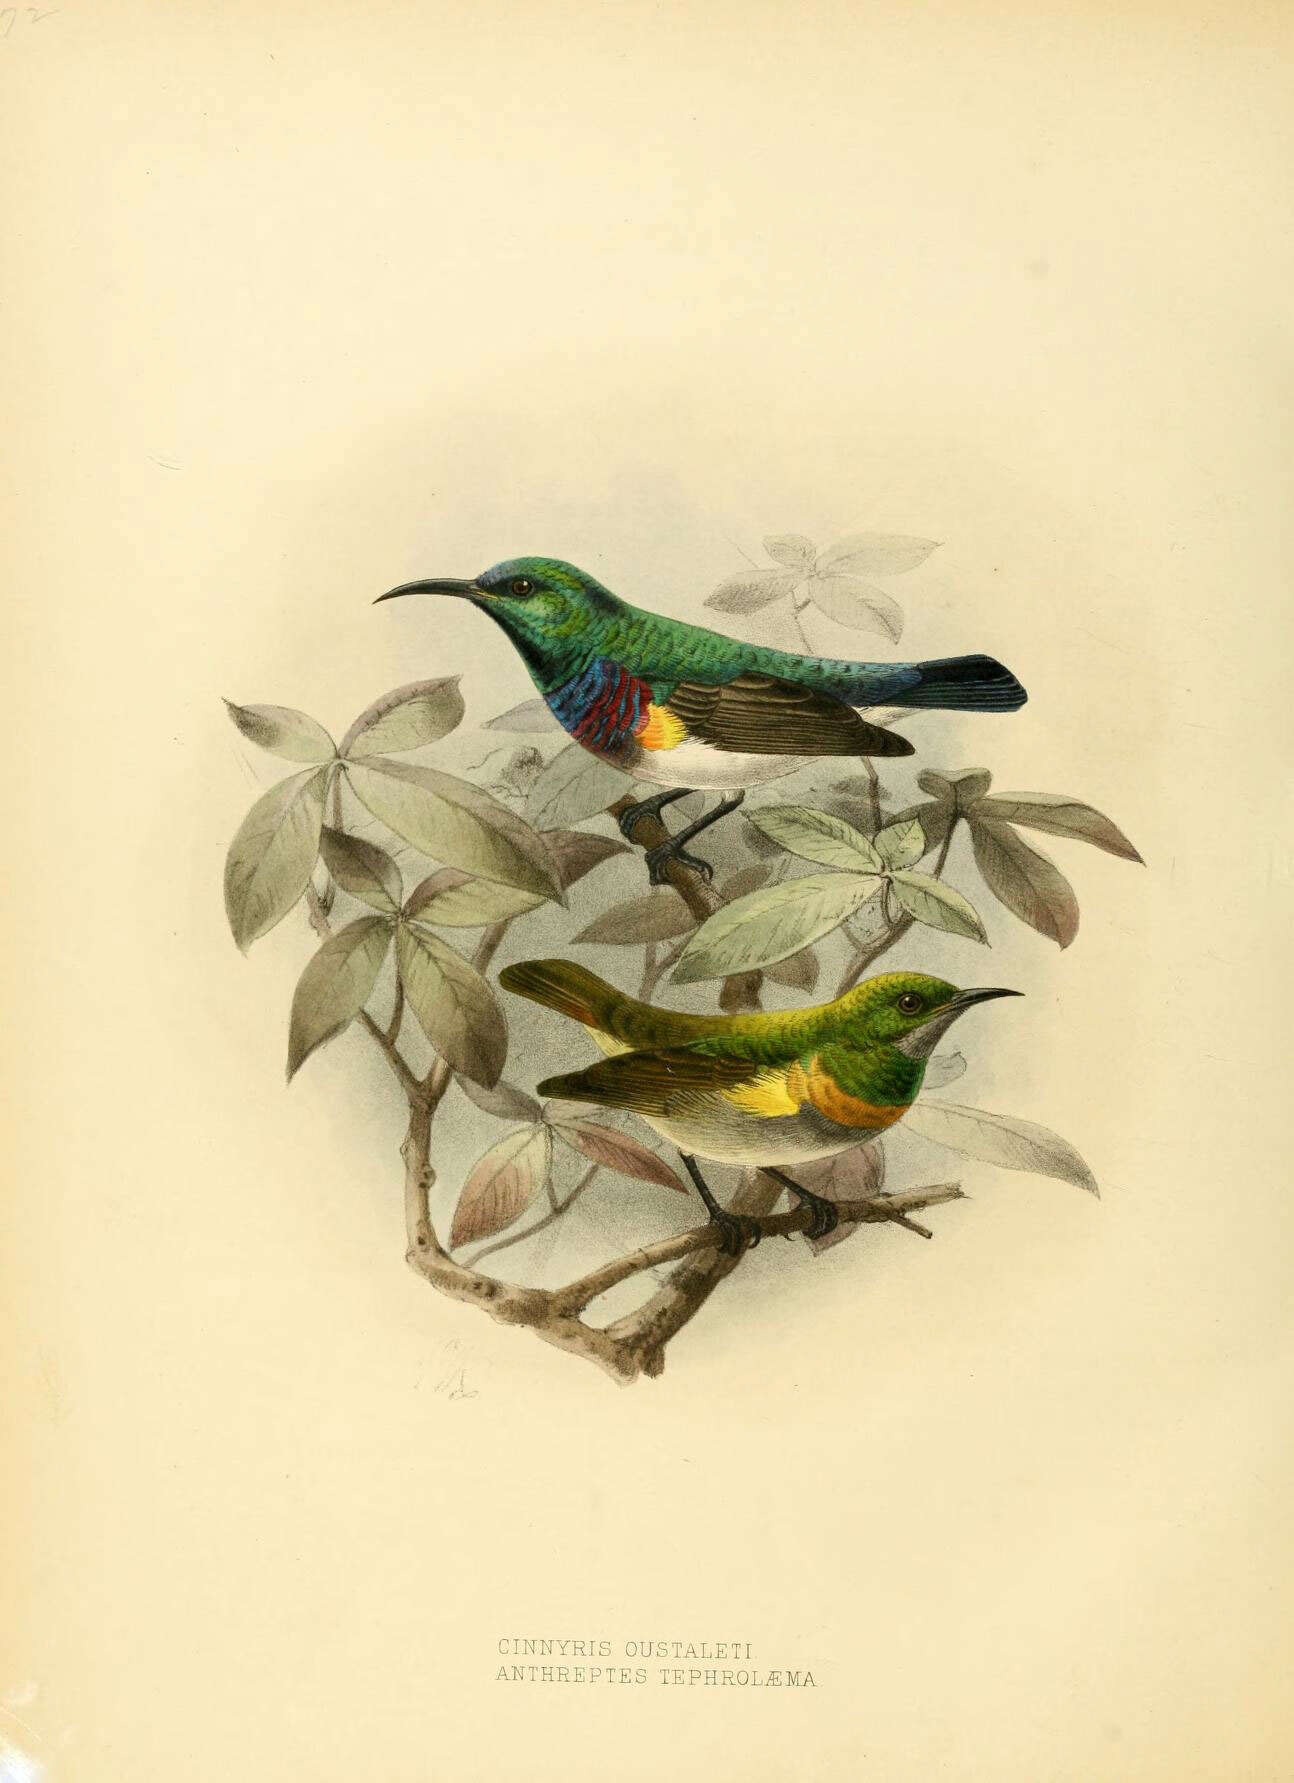 Image of Green Sunbird